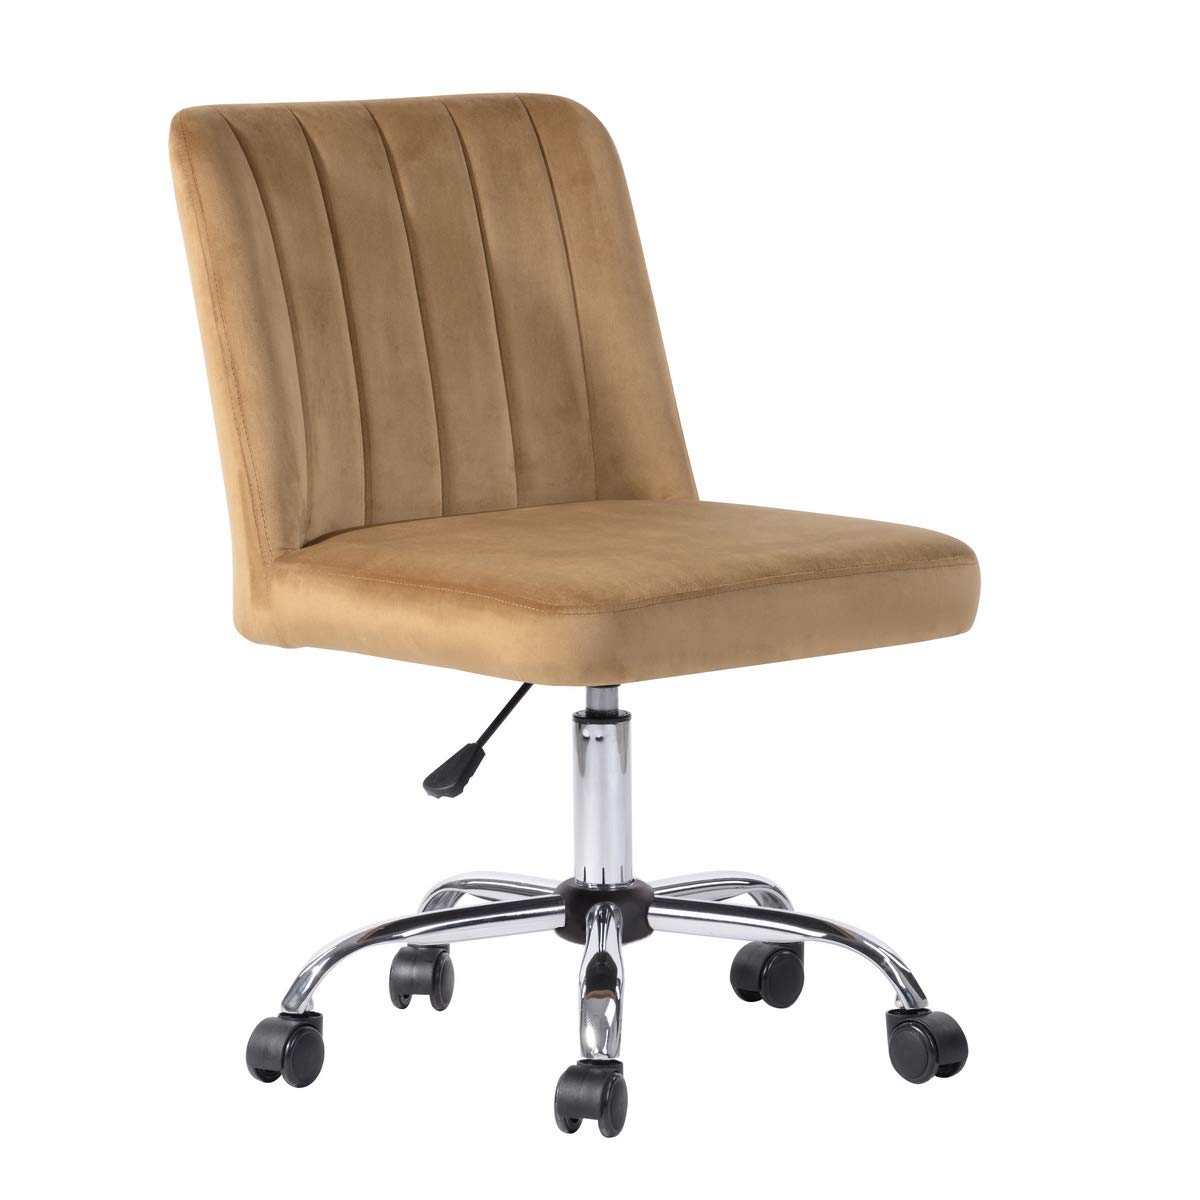 FurnitureR Camel Desk Chair, Computer Office Chair Adjustable Height Swivel, Velvet Uphosltery